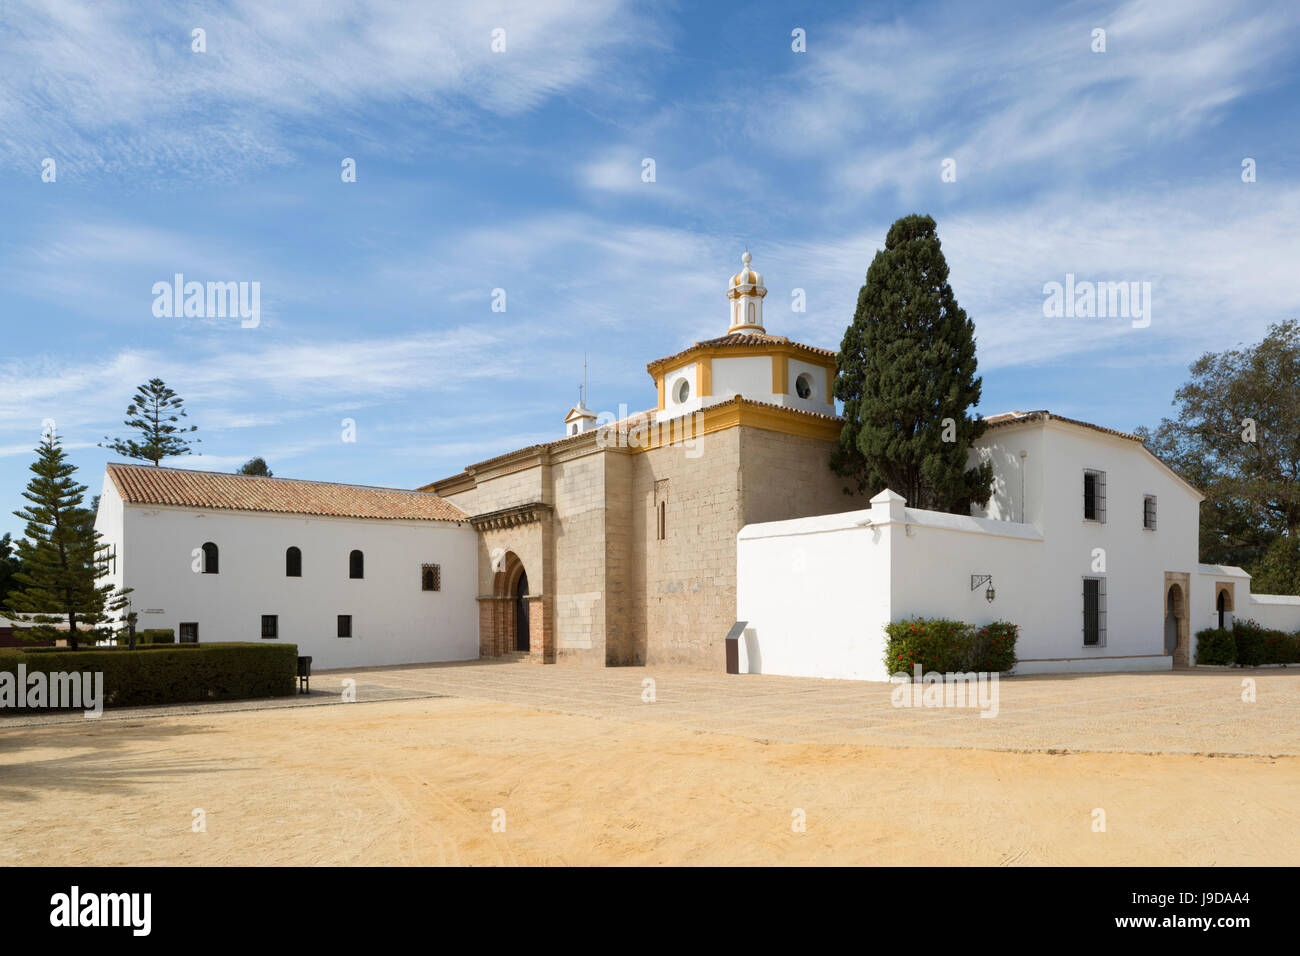 La Rabida monastero dove Colombo soggiornò prima del viaggio storico del 1492, La Rabida, Huelva, Costa de la Luz, Andalusia, Spagna Foto Stock